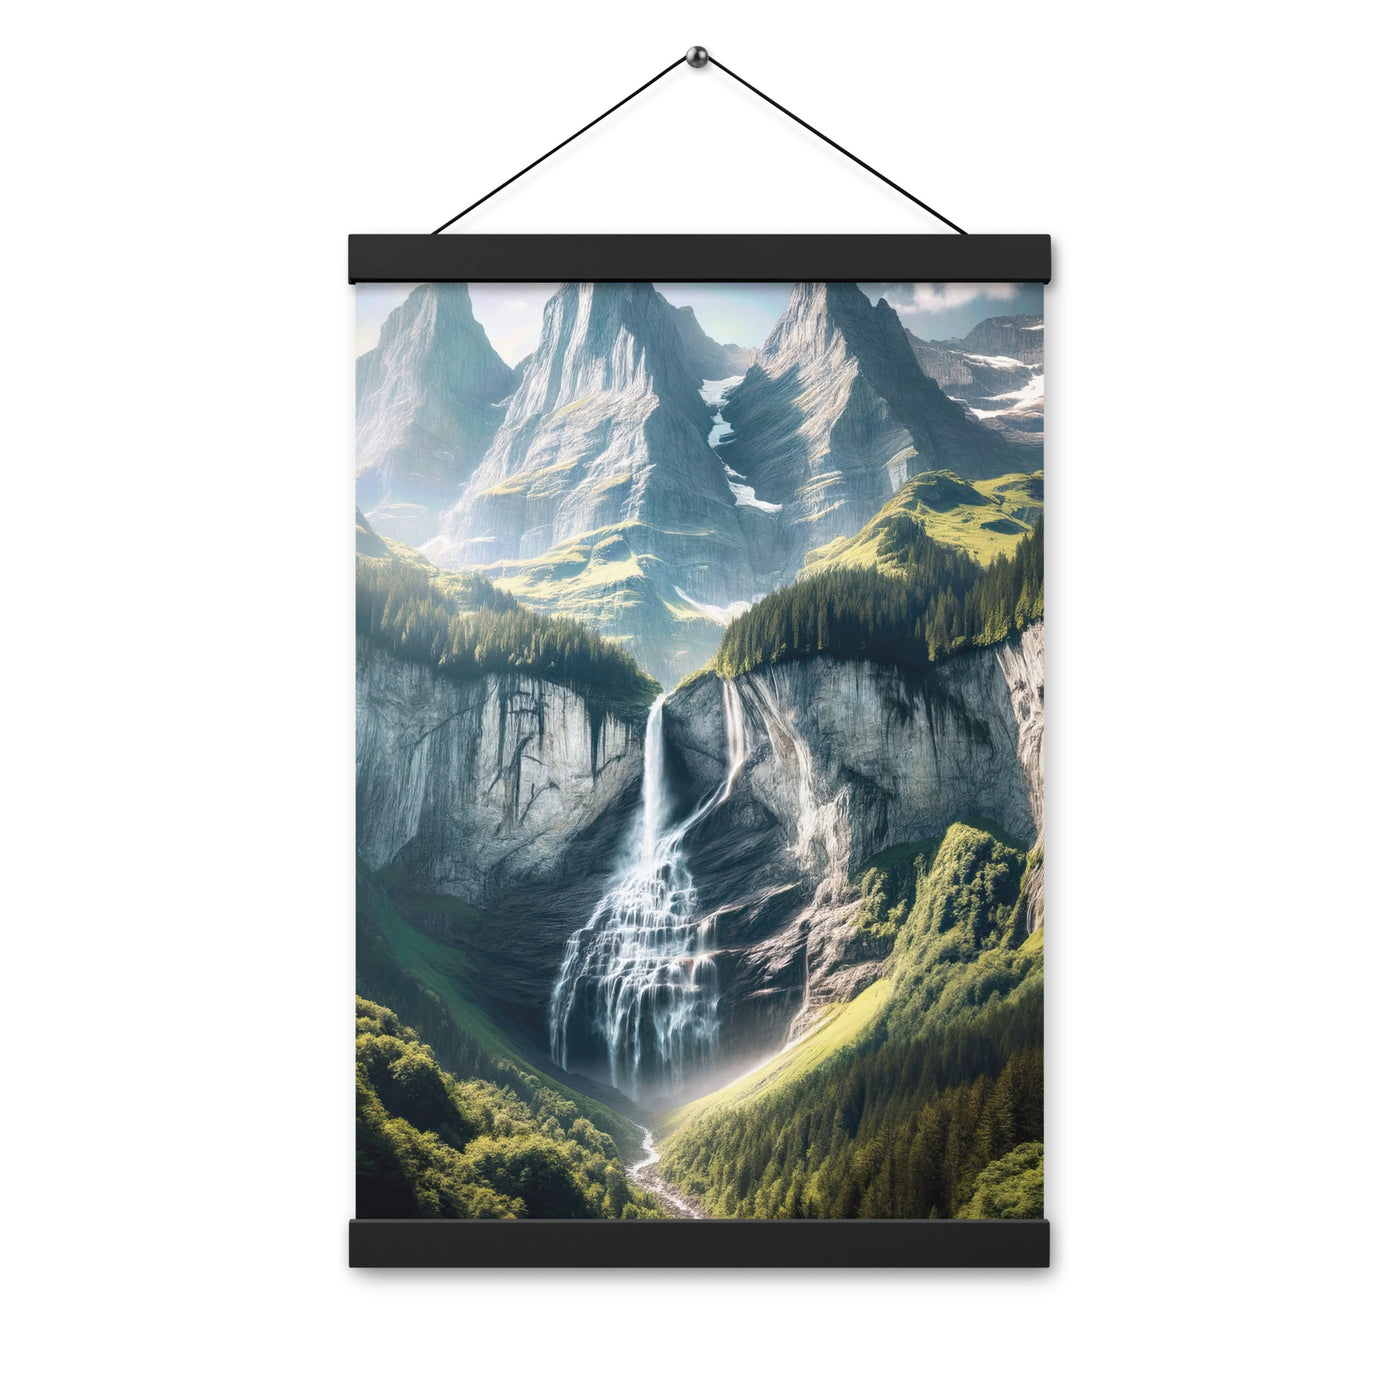 Foto der sommerlichen Alpen mit üppigen Gipfeln und Wasserfall - Premium Poster mit Aufhängung berge xxx yyy zzz 30.5 x 45.7 cm